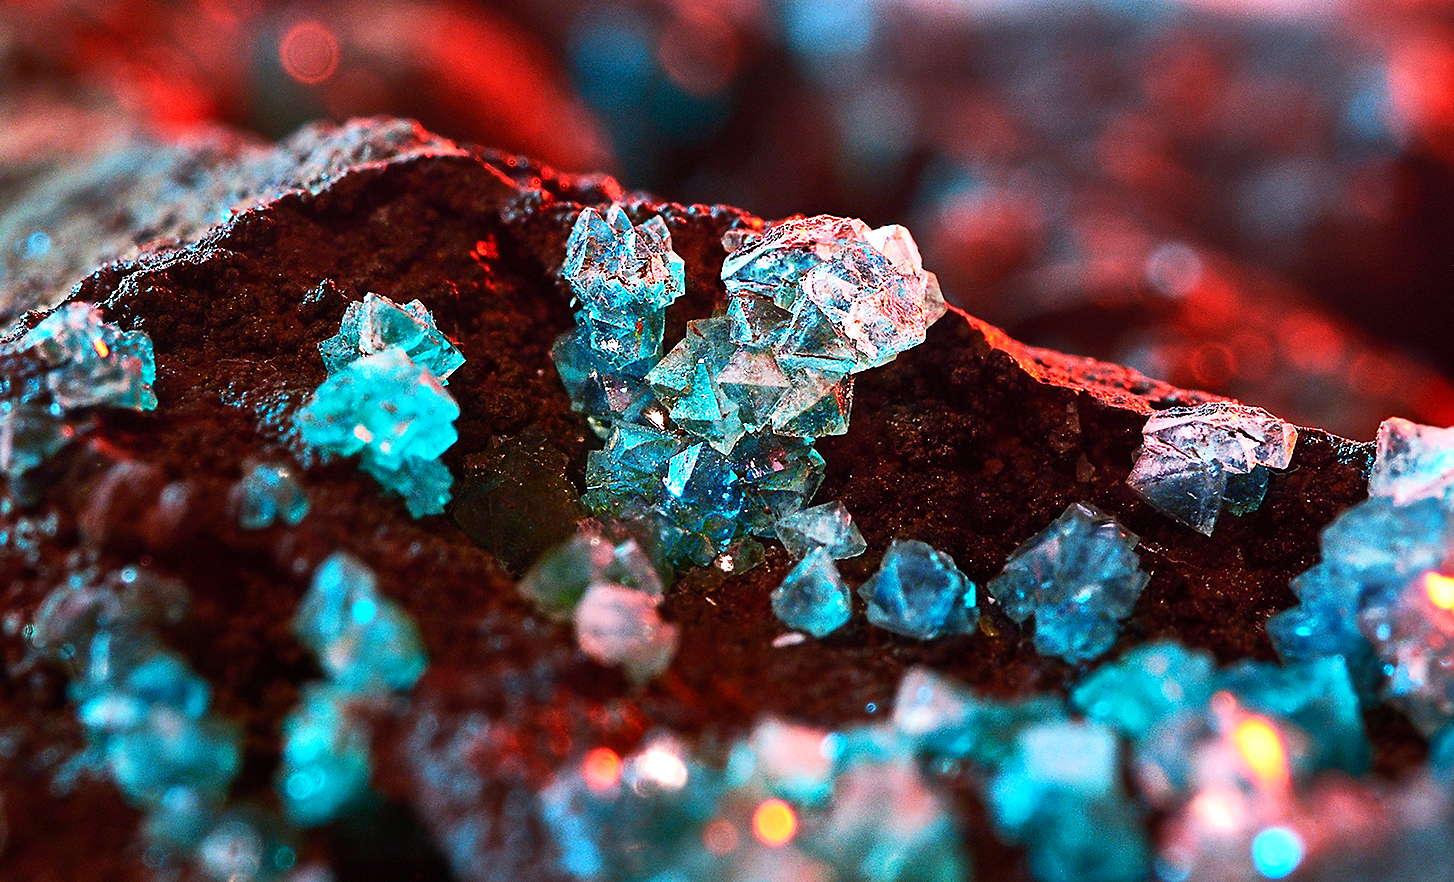 Capture d’écran montrant des cristaux rouges, turquoise et transparents